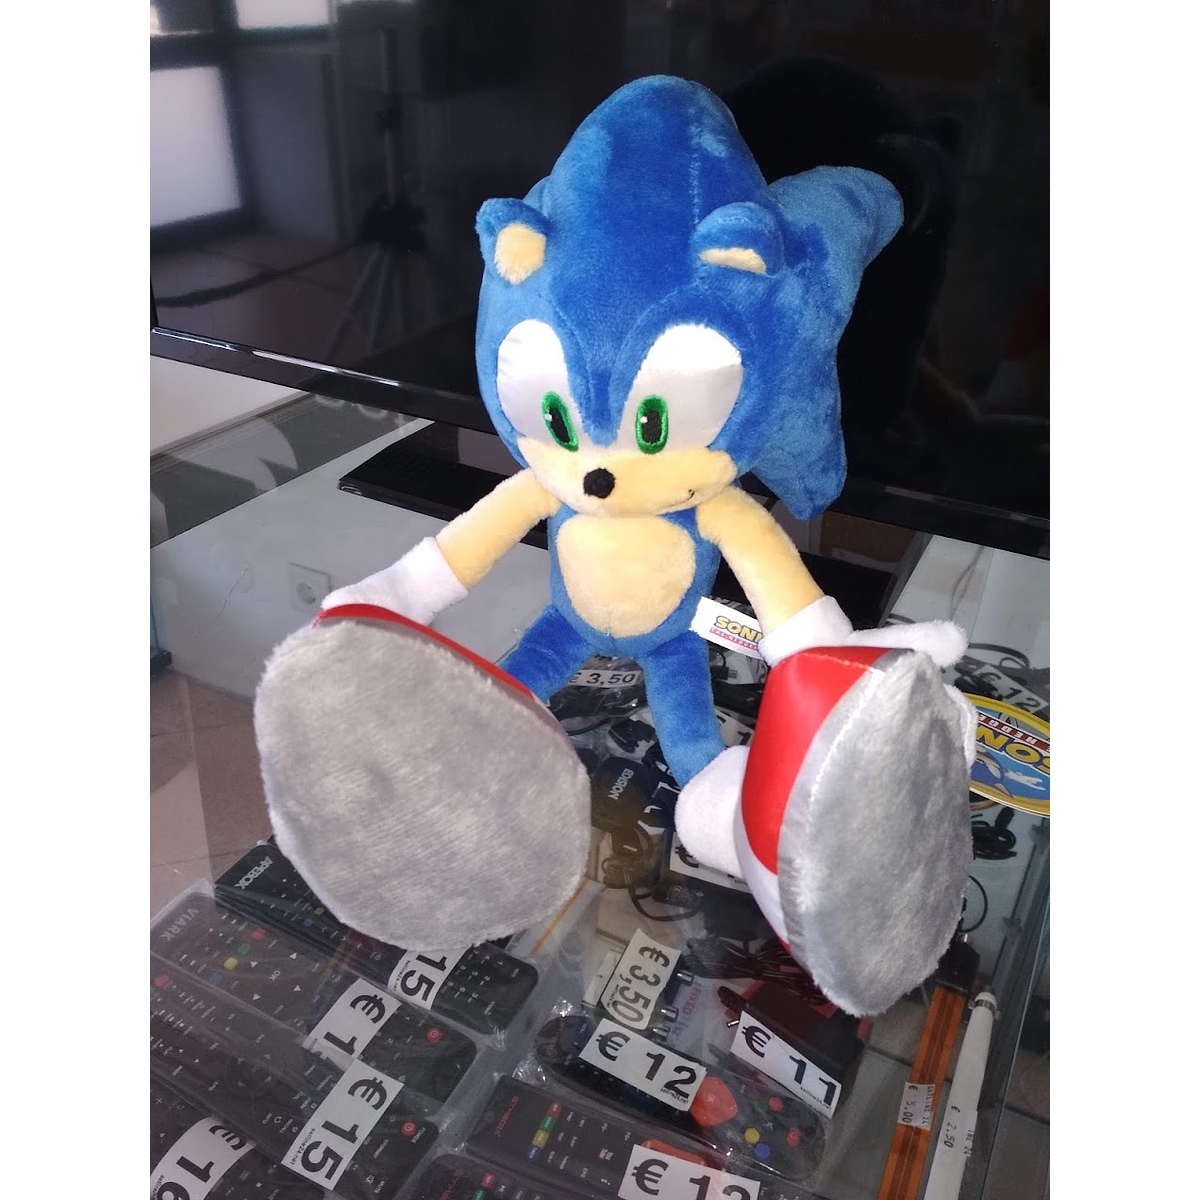 Tails Sonic Filme Game Coleção Blocos Boneco